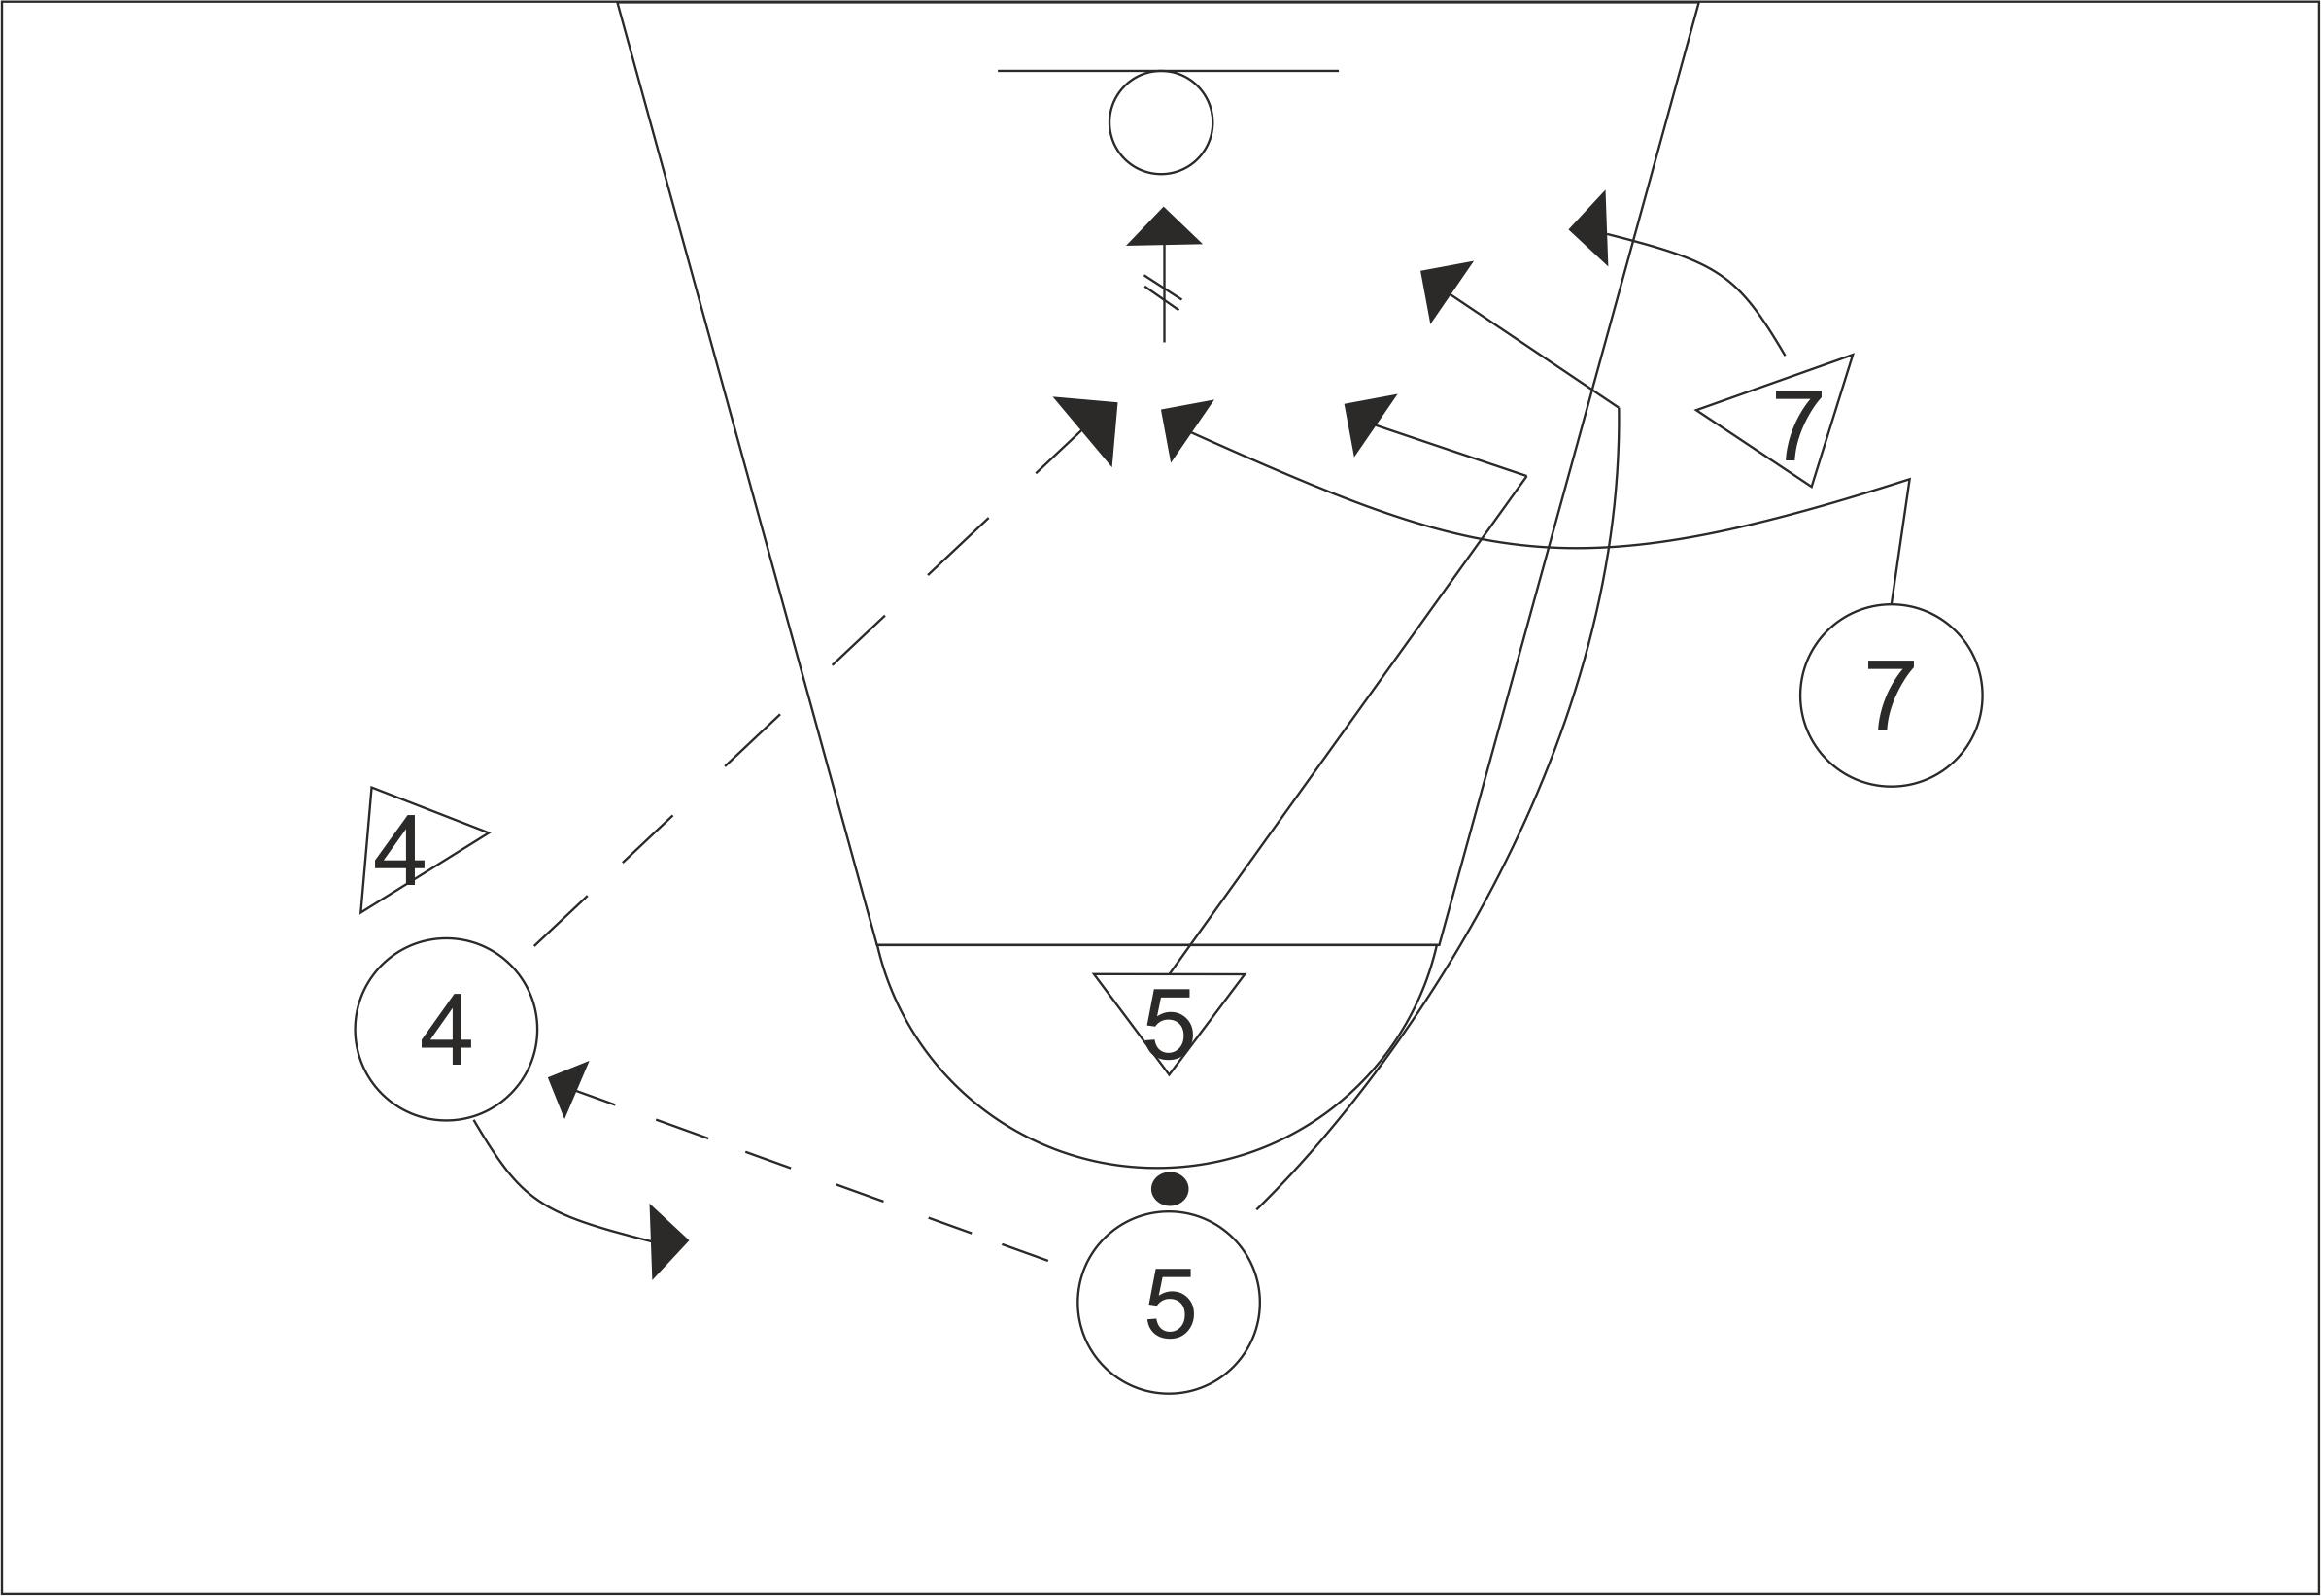 Типичное взаимодействие игроков в комбинациях непрерывного нападения. Взаимодействие двух игроков в баскетболе. Заслон в баскетболе схема. Взаимодействие двух игроков нападения. Взаимодействие 3 игроков в нападении.